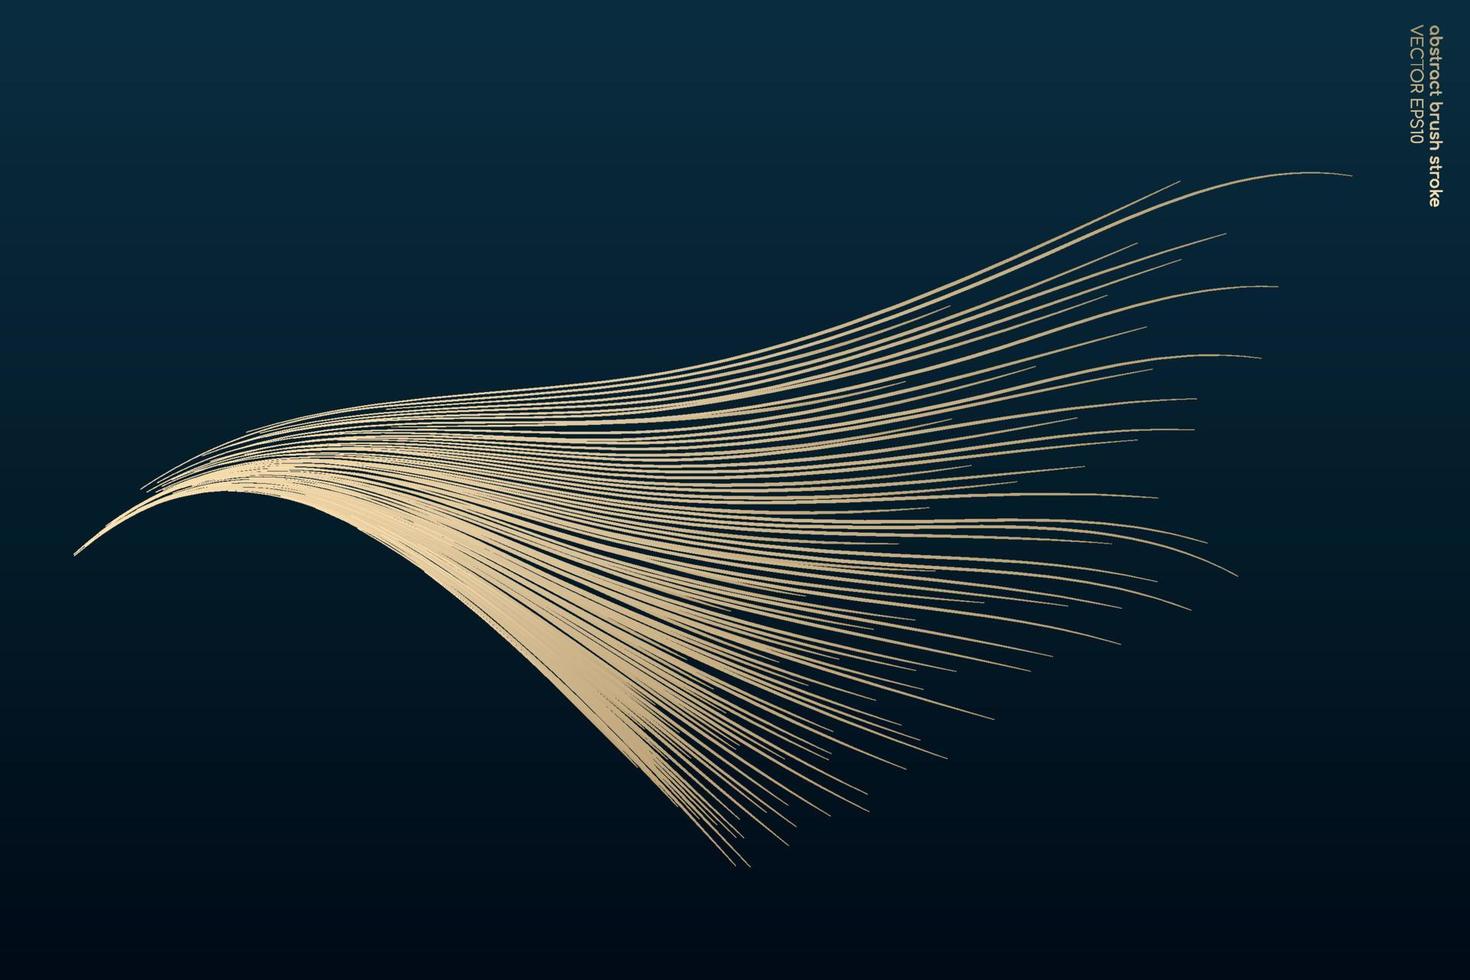 abstrakt vektor zen konst av guld penseldrag ser ut som vinge isolerad på mörk kricka blå bakgrund